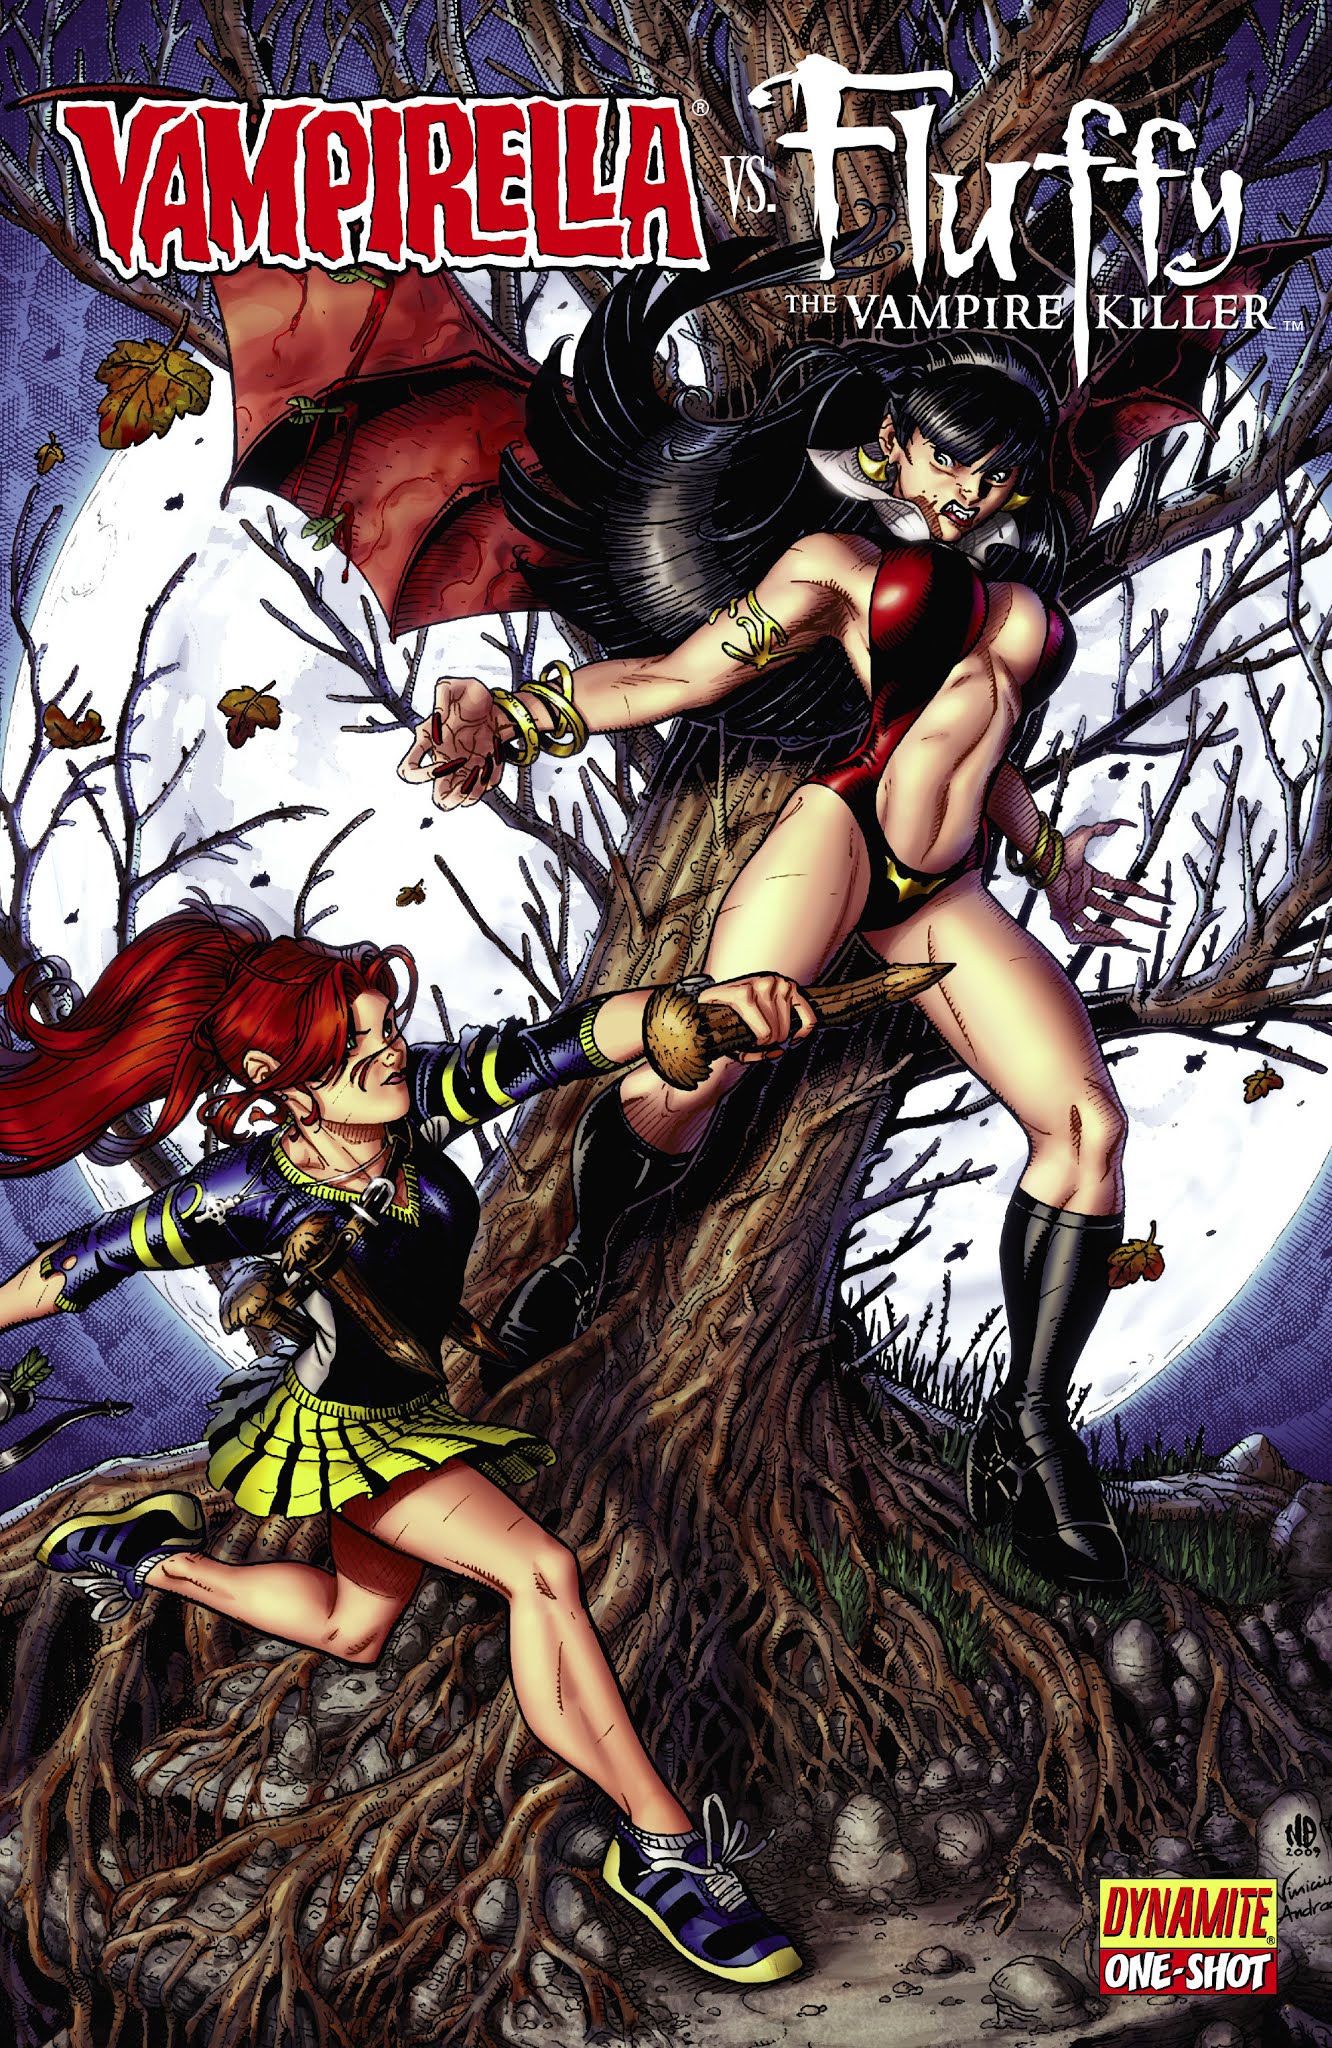 Read online Vampirella vs. Fluffy comic -  Issue # Full - 1